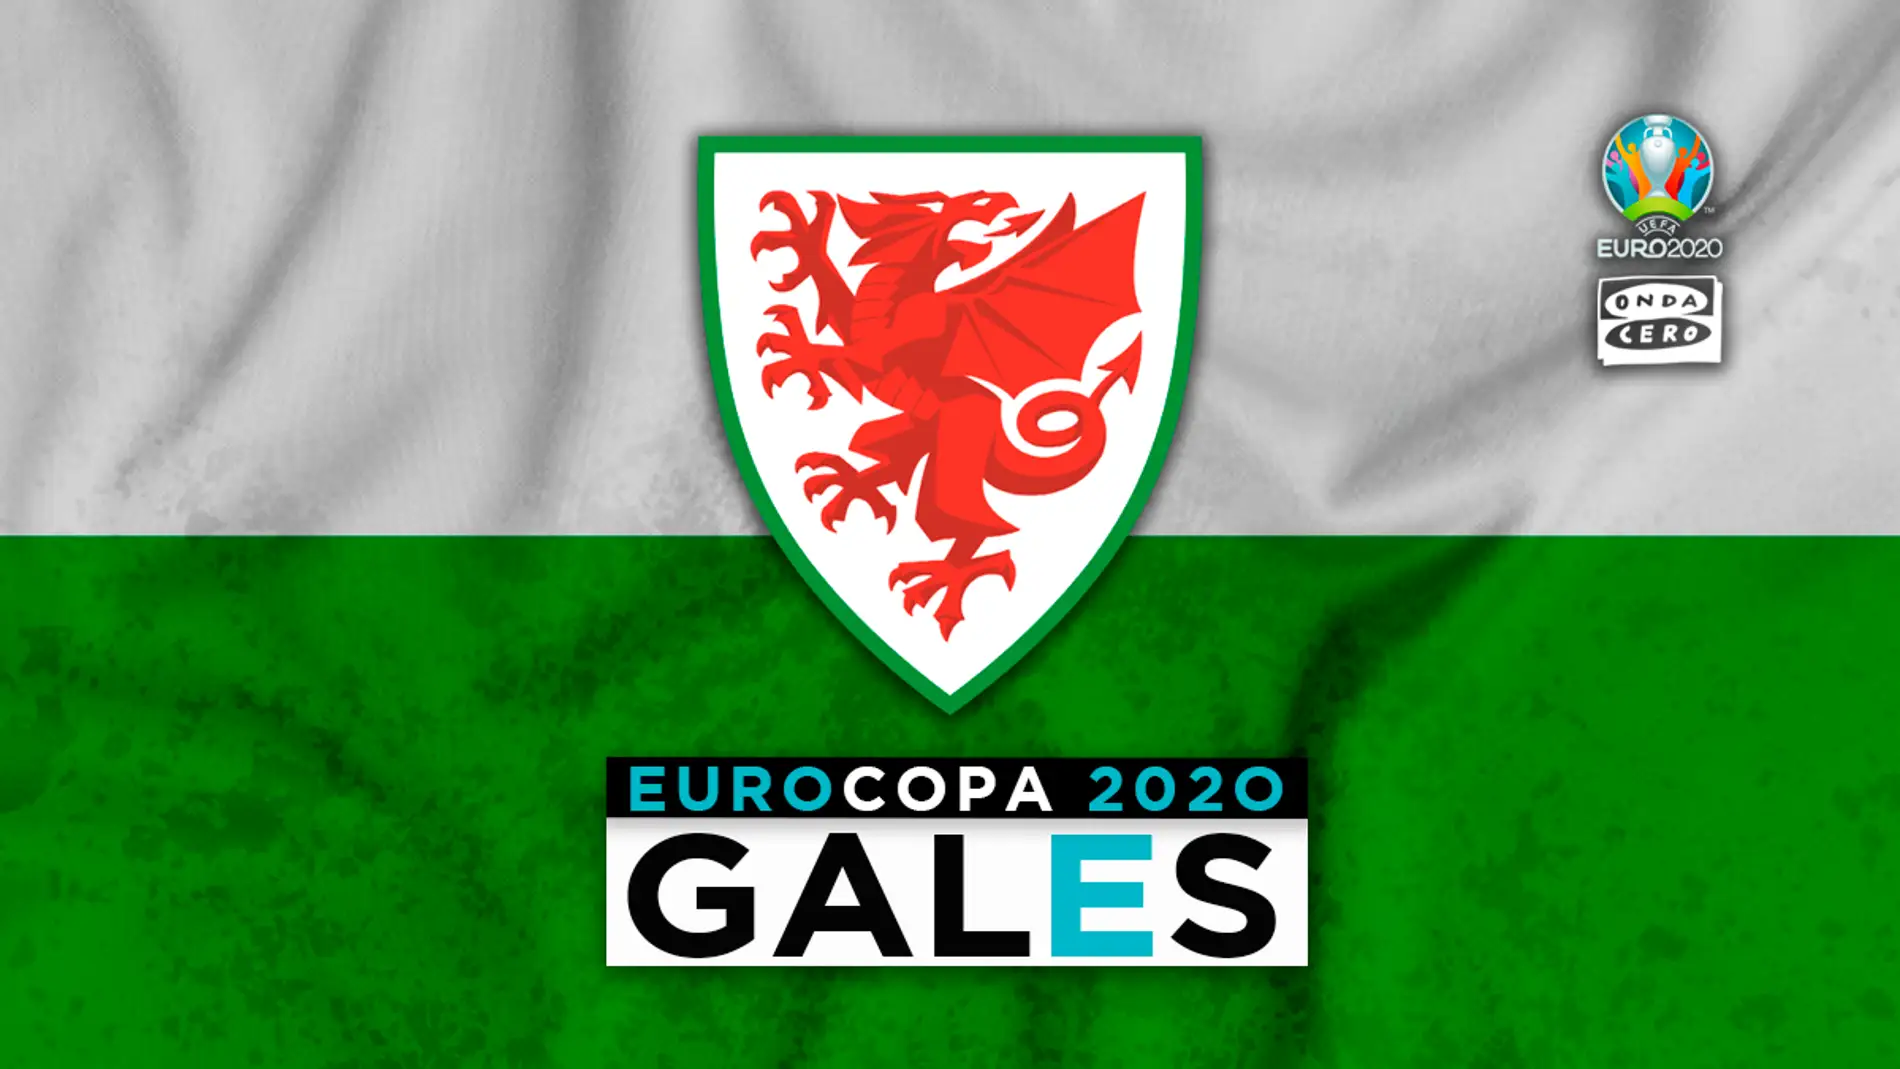 Gales en la Eurocopa: alineación probable, convocatoria y lista completa de jugadores